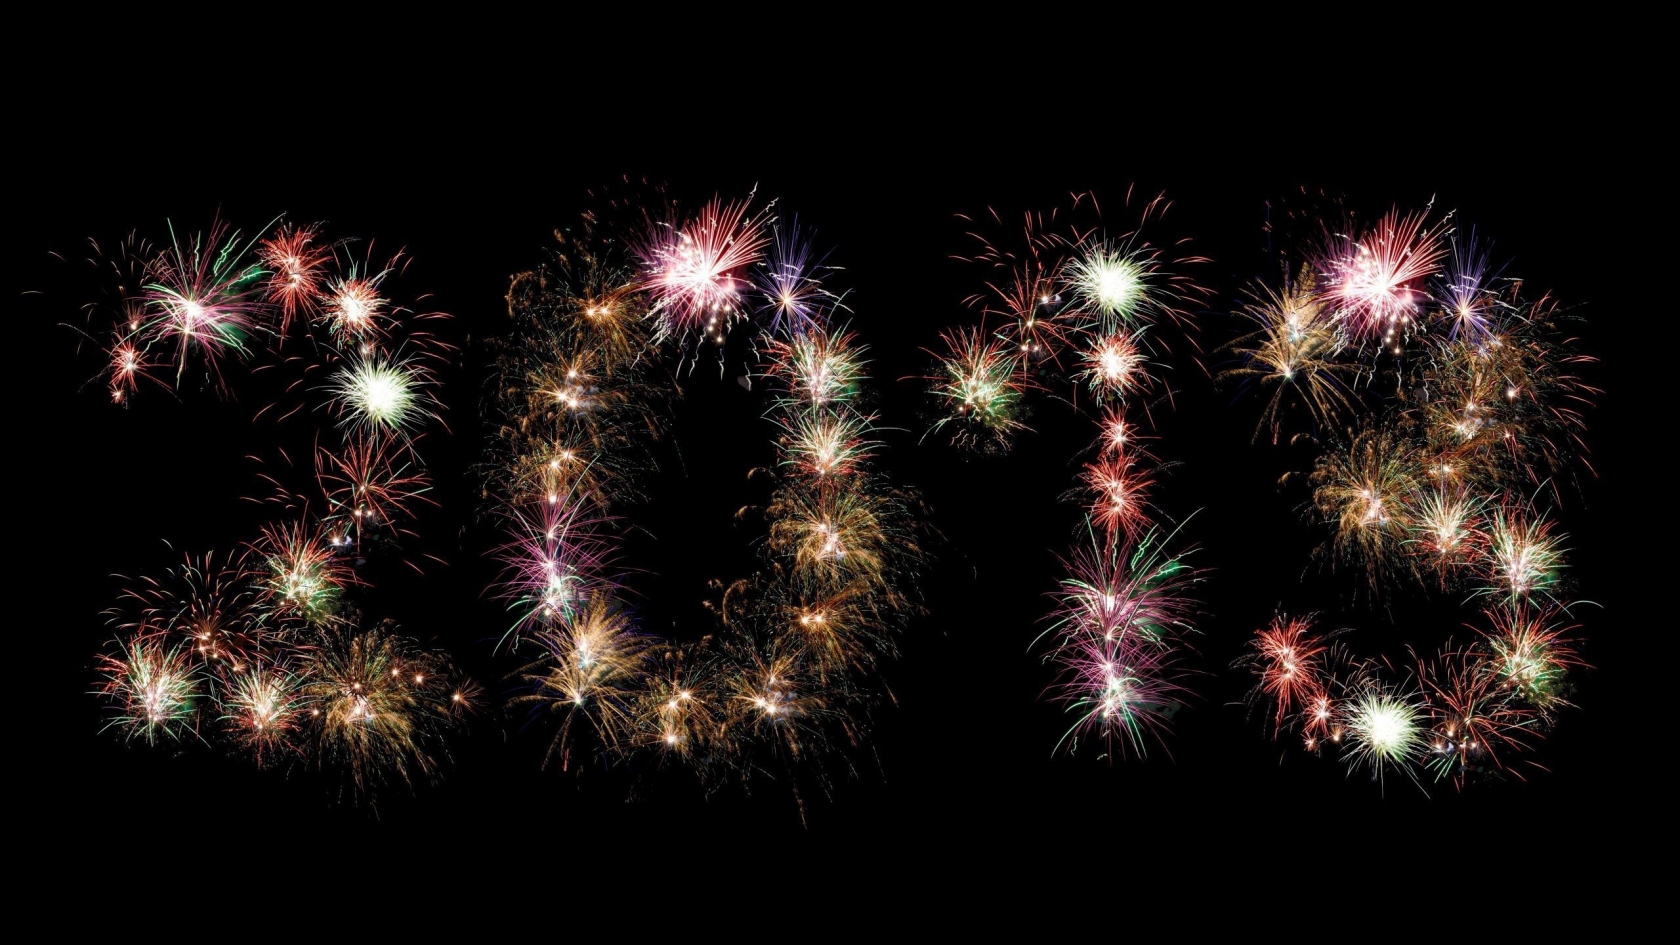 2013 Fireworks for 1680 x 945 HDTV resolution